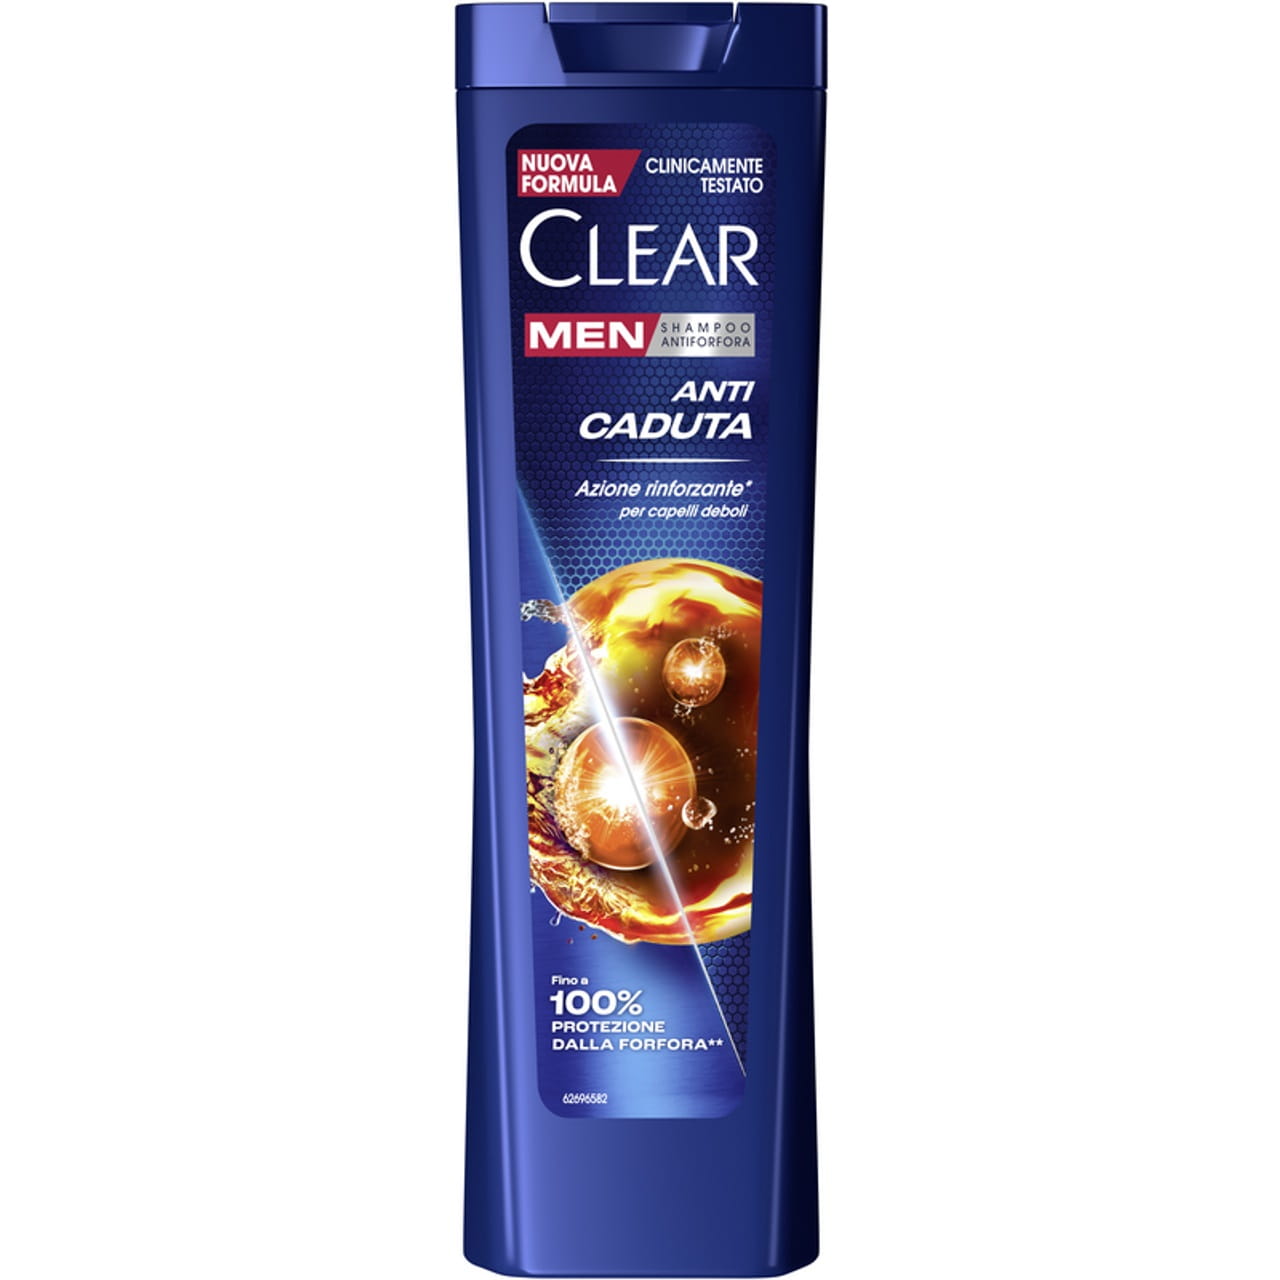 clear szampon męski gdzie kupic